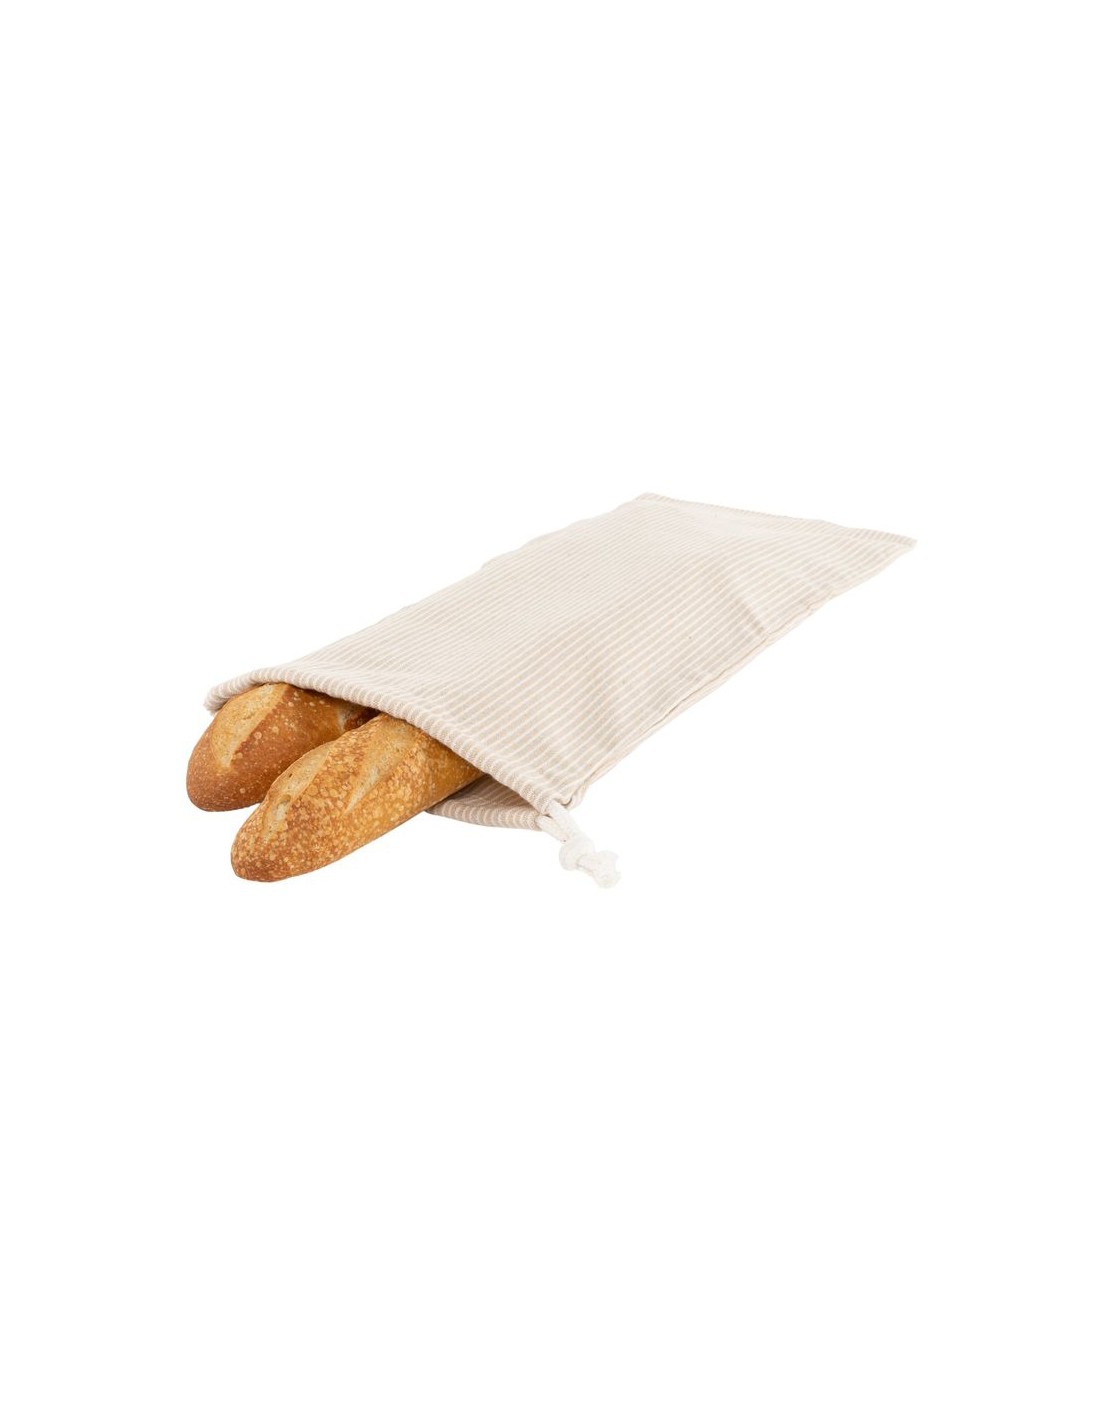 Cestas de tela individuales para el pan 